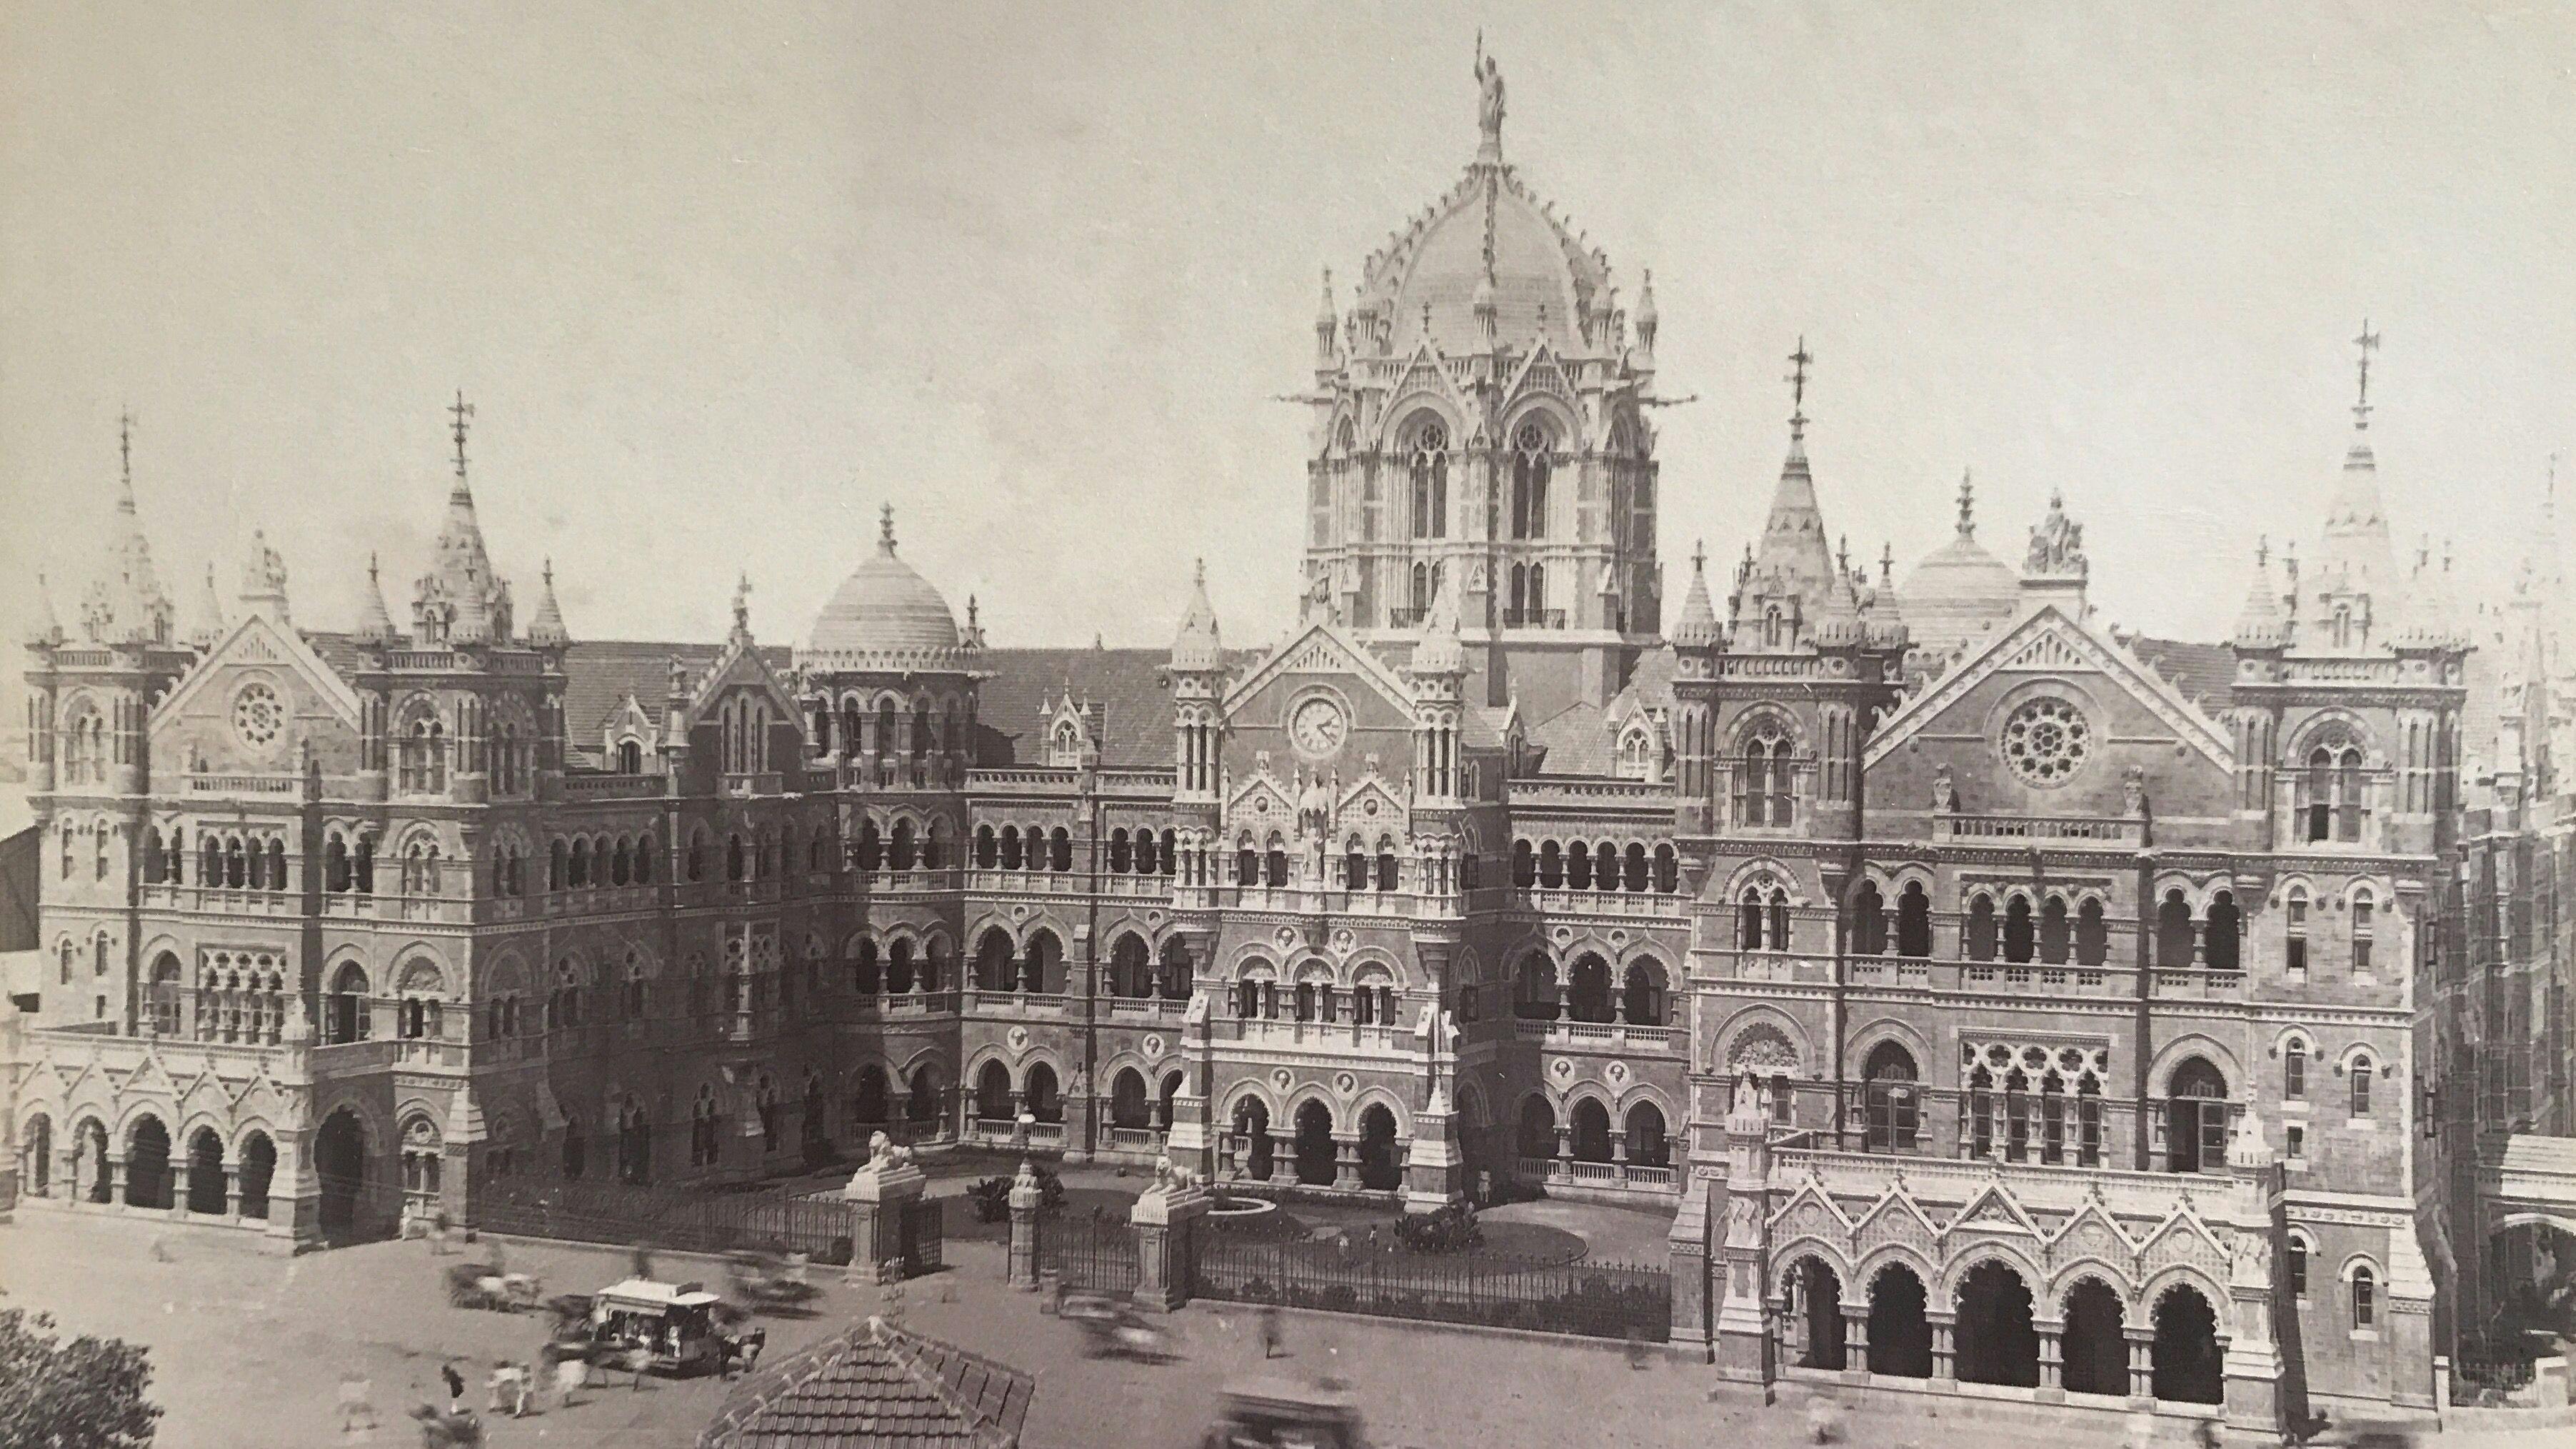 Bygone Bombay